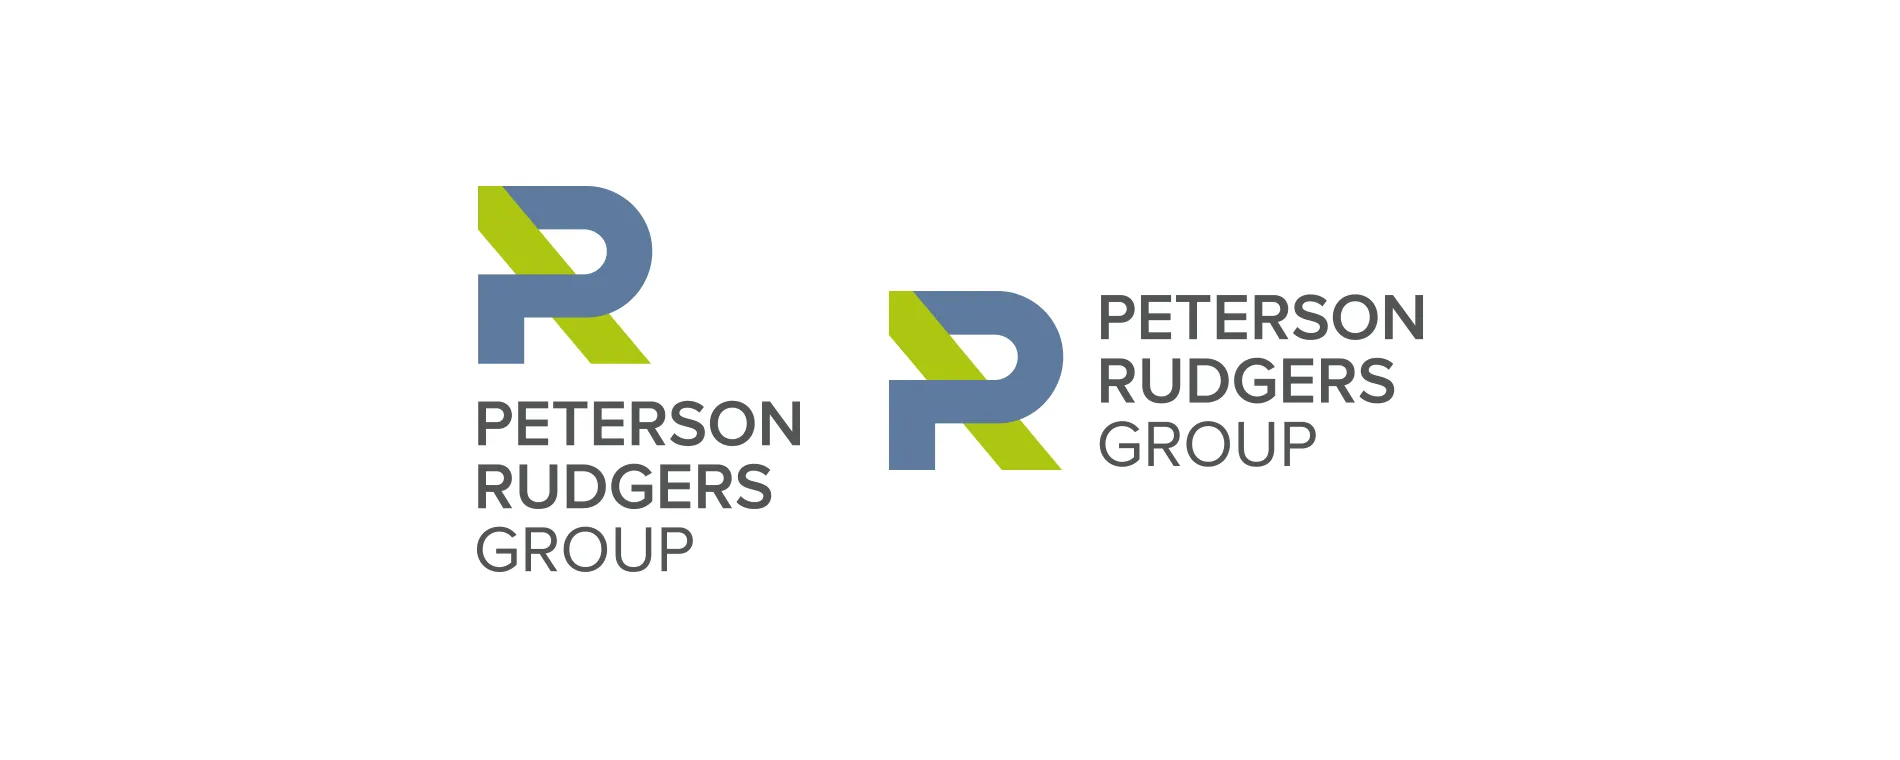 Peterson Rudgers Group logo design